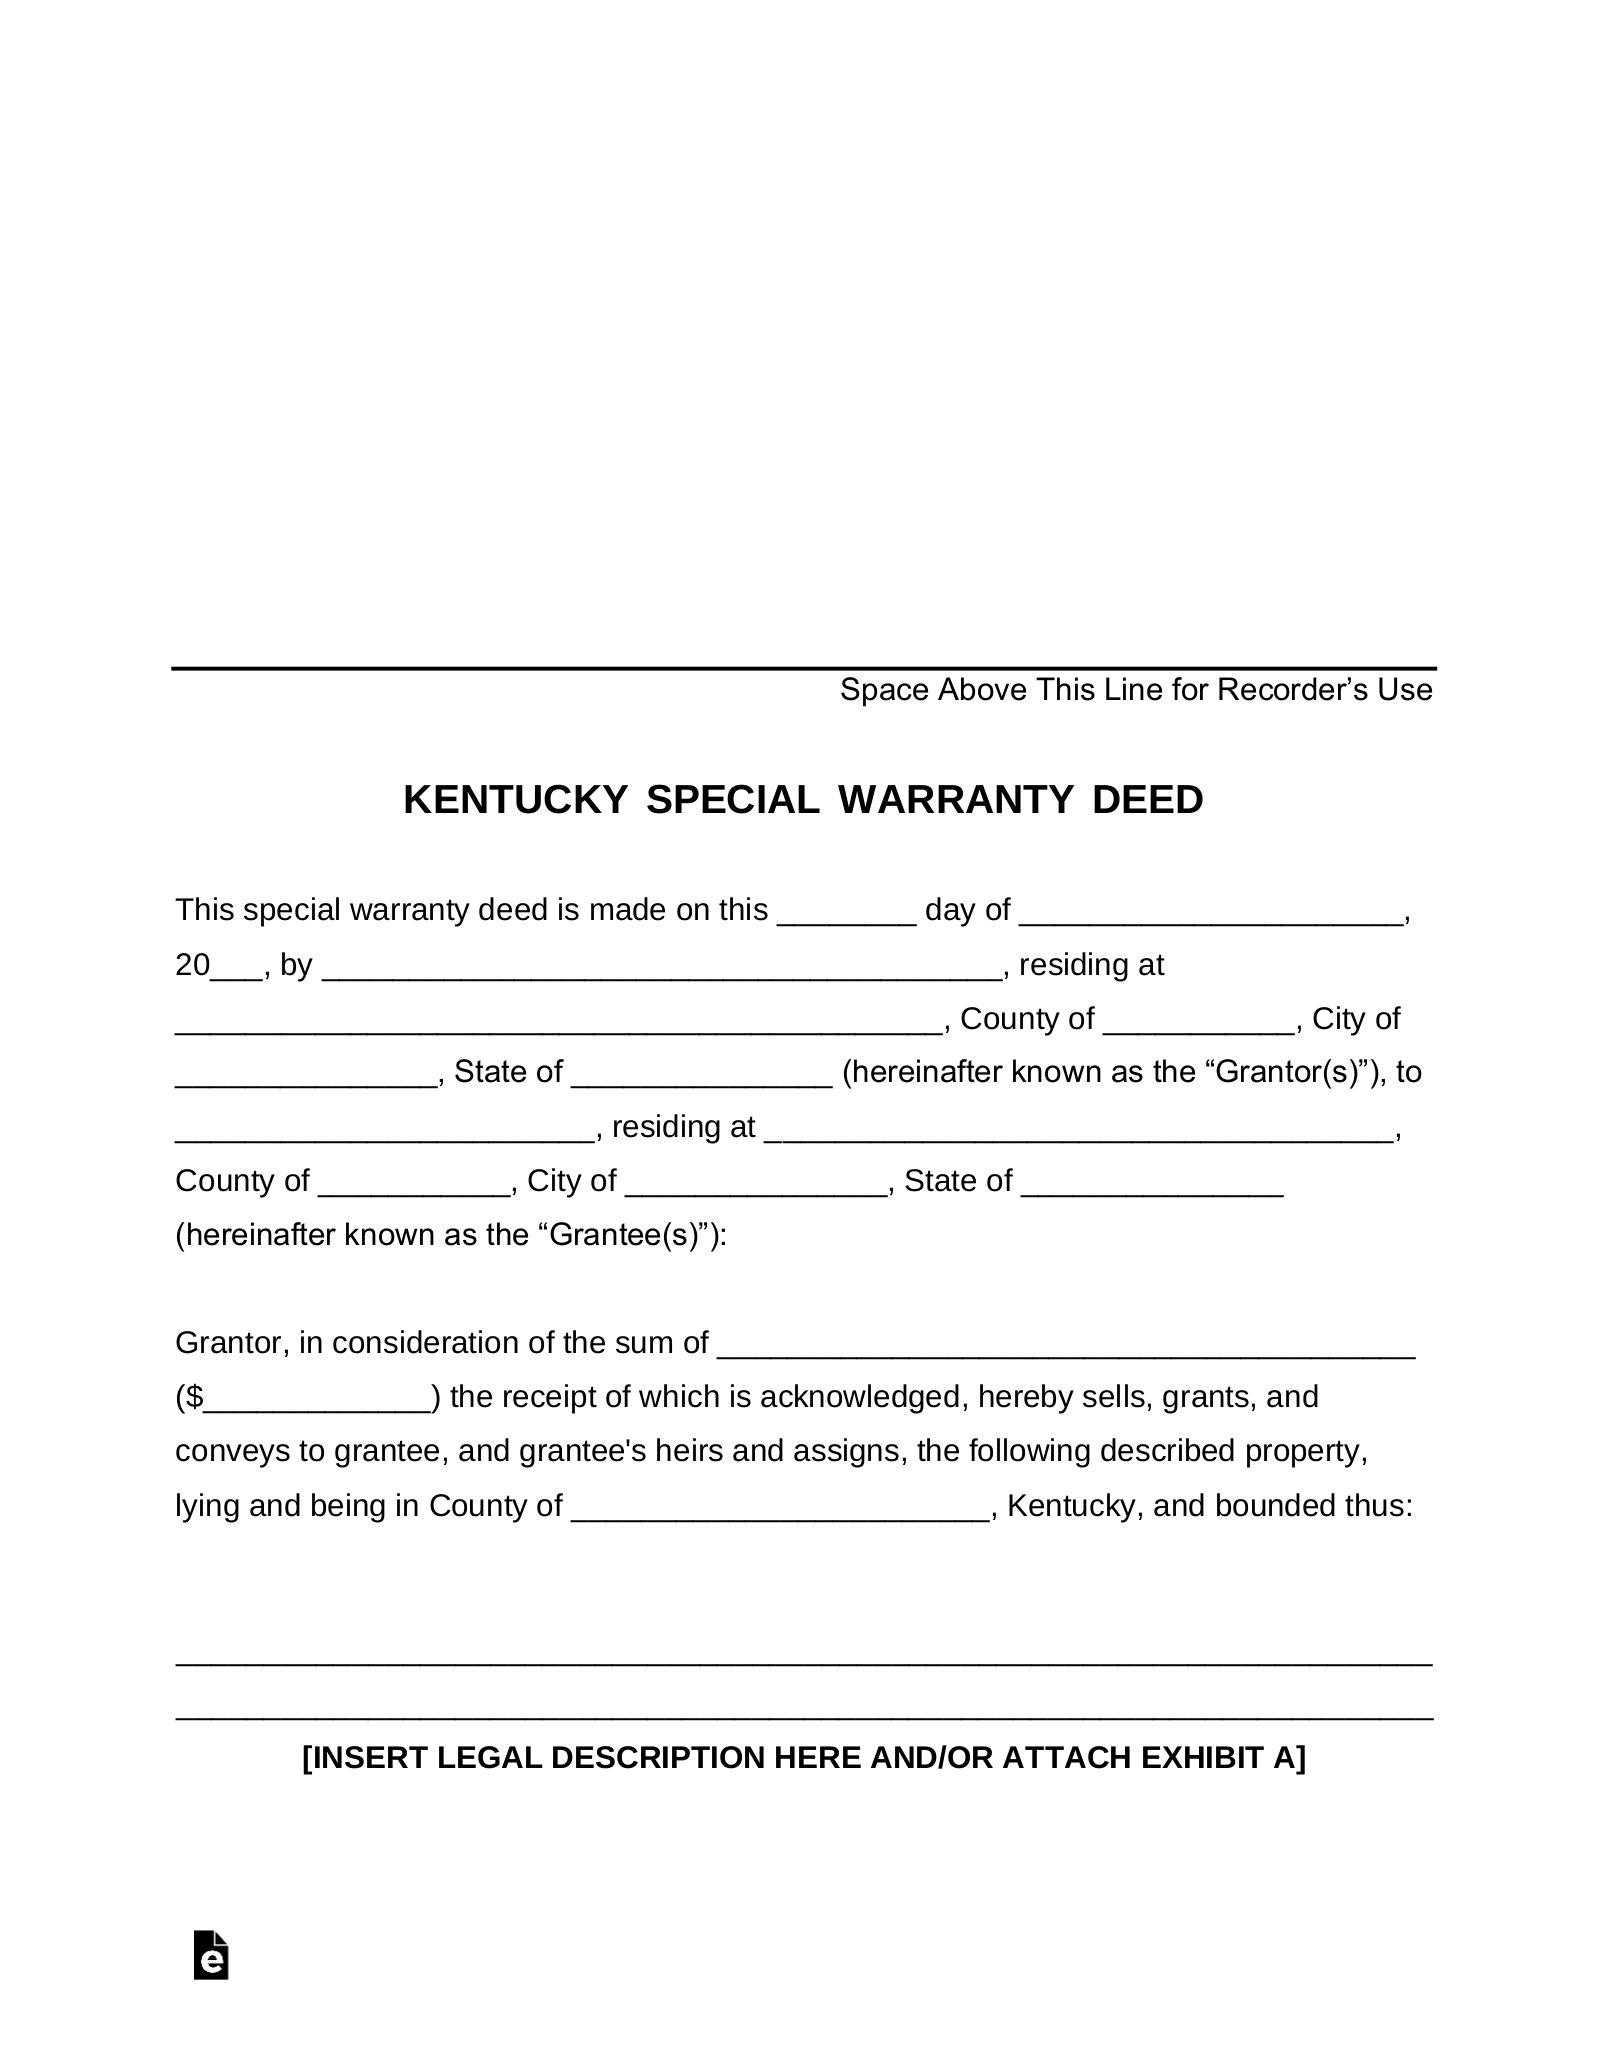 Kentucky Special Warranty Deed Form